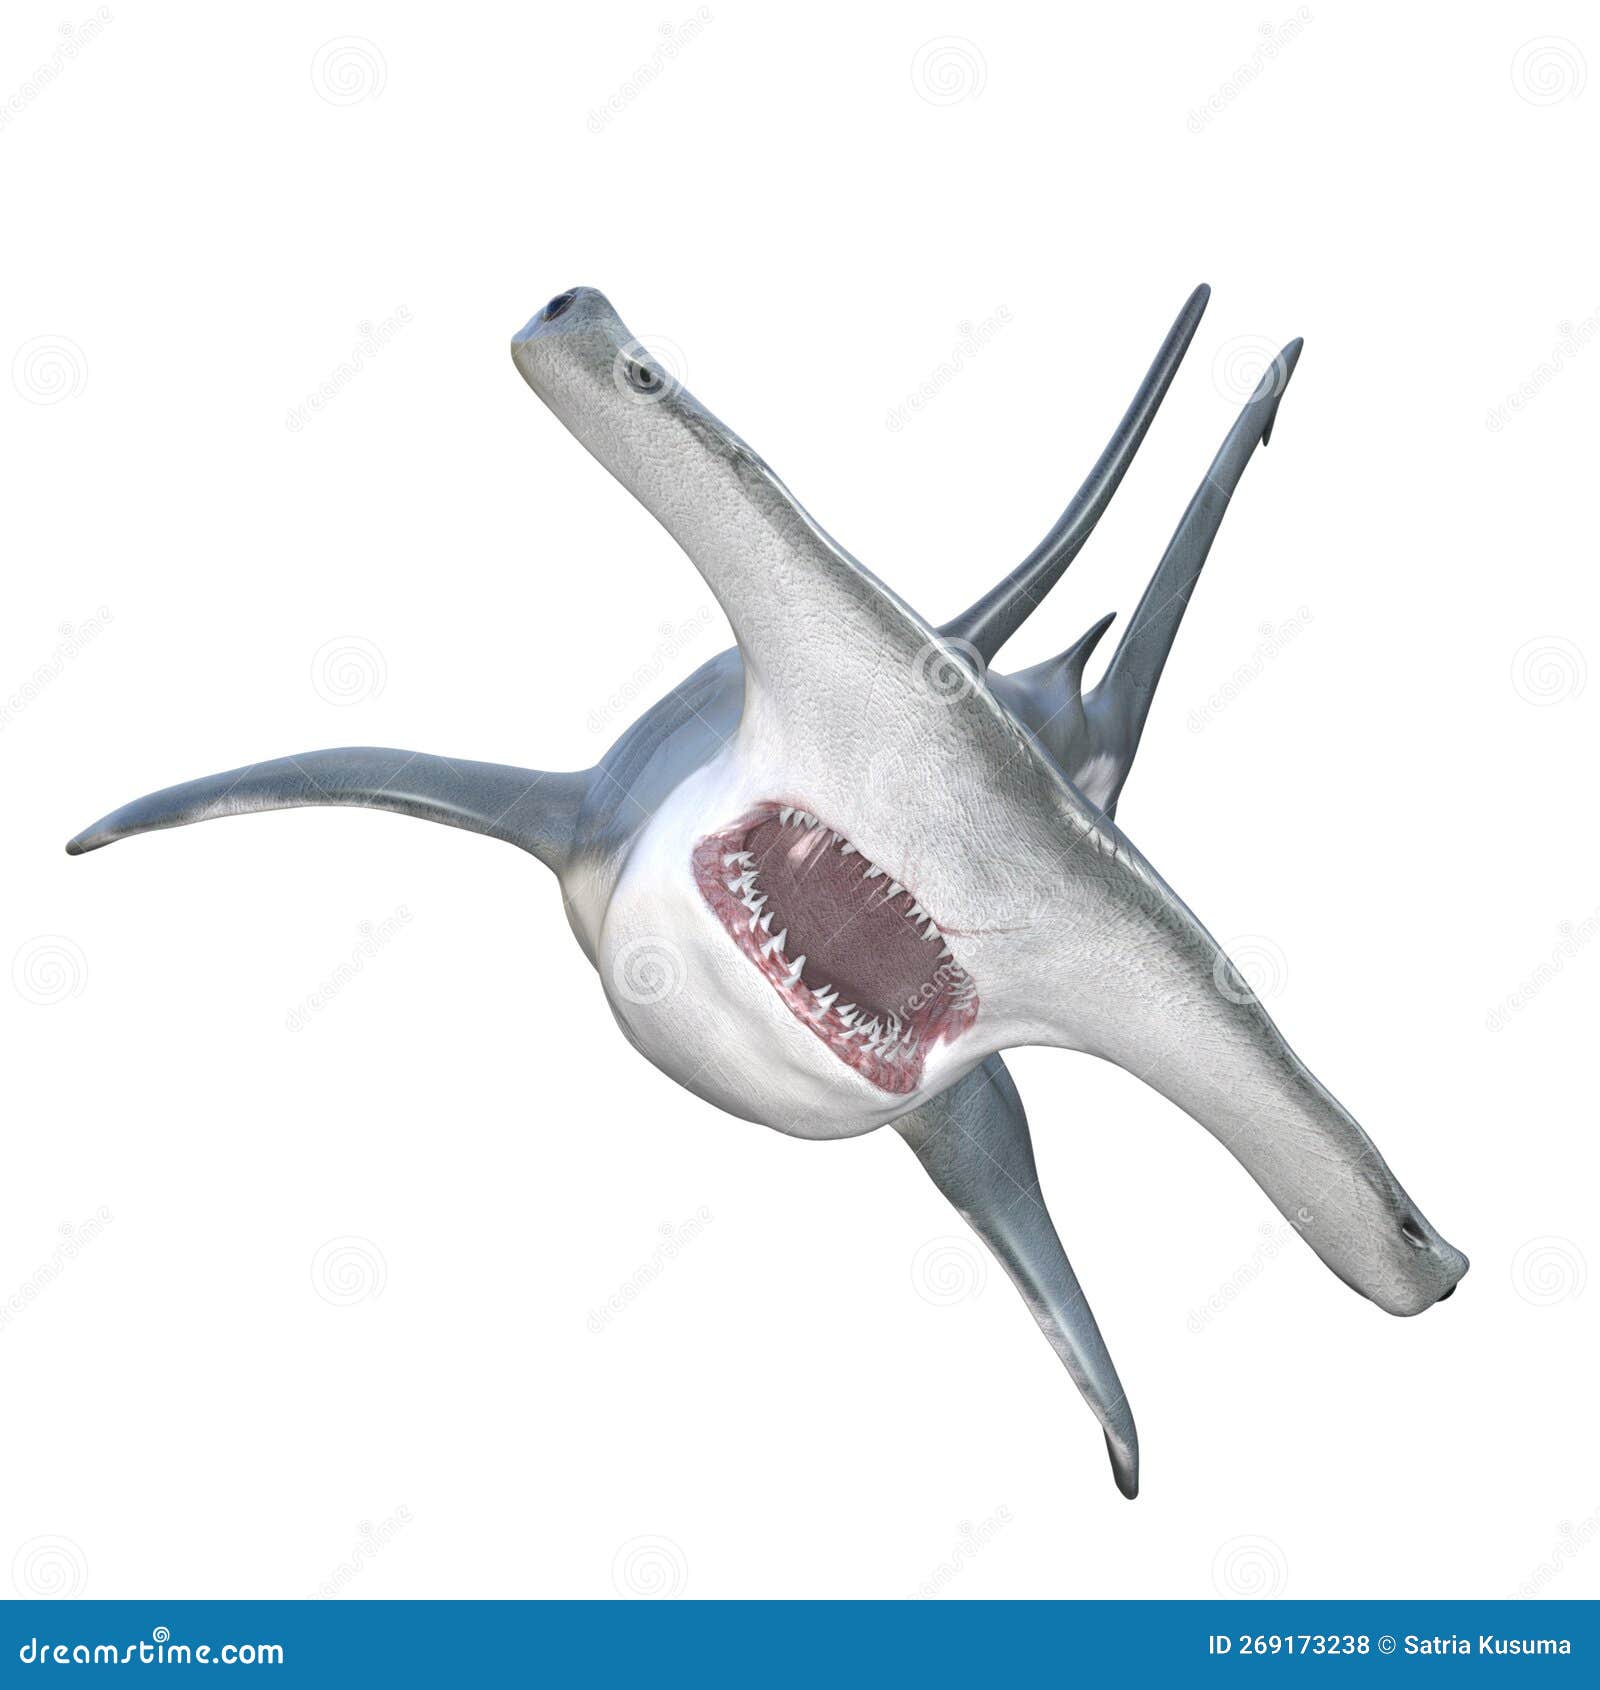 3D Rendering Hammerhead Shark On White Stock Photo | CartoonDealer.com ...